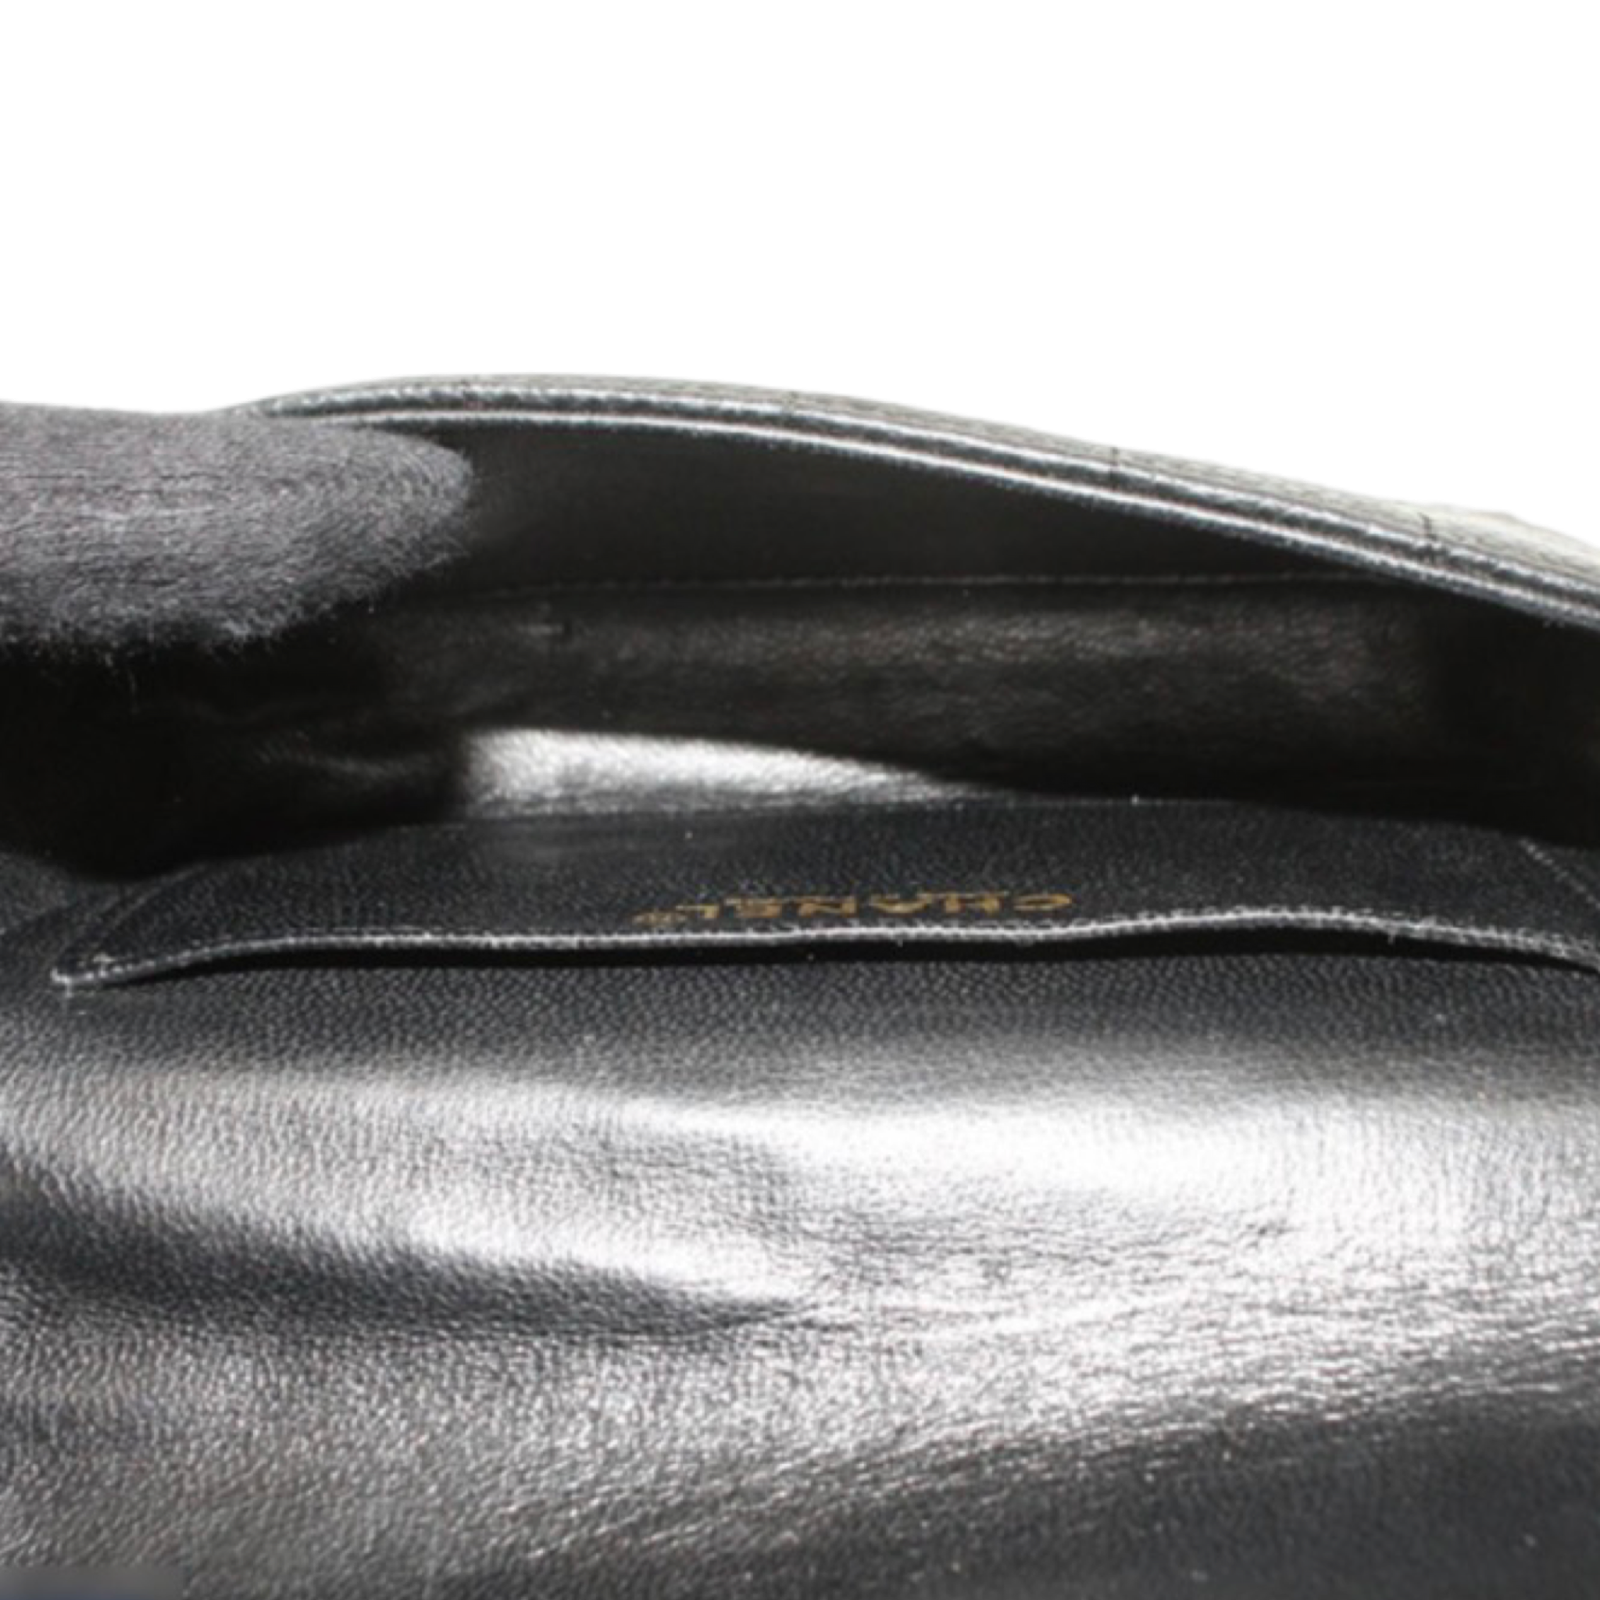 SAINT LAURENT (YSL) Canvas & Leather BELT BAG REVIEW + Mod Shots 